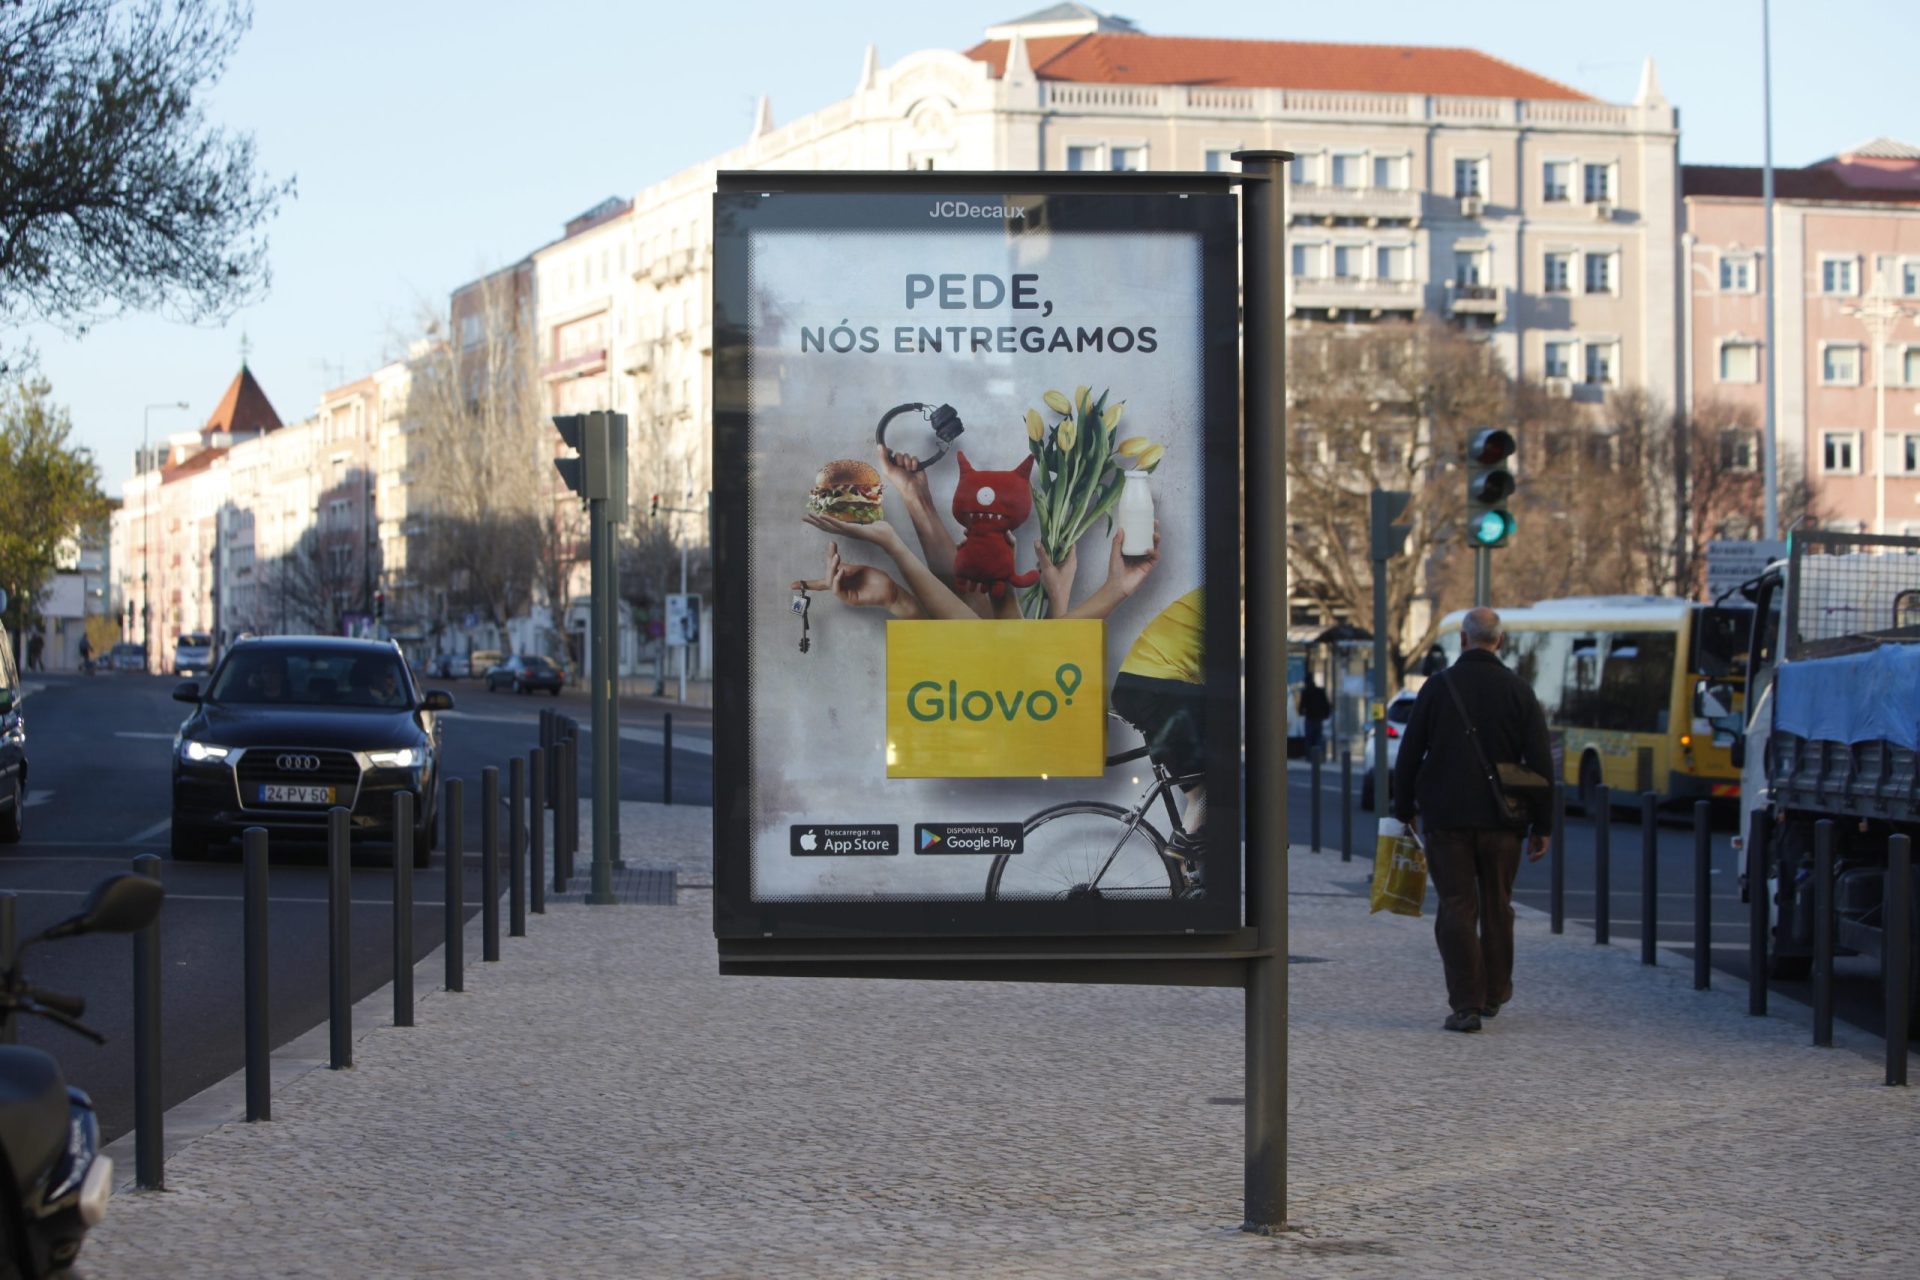 Concurso de publicidade em Lisboa. MOP fica em 1.º lugar mas é excluído